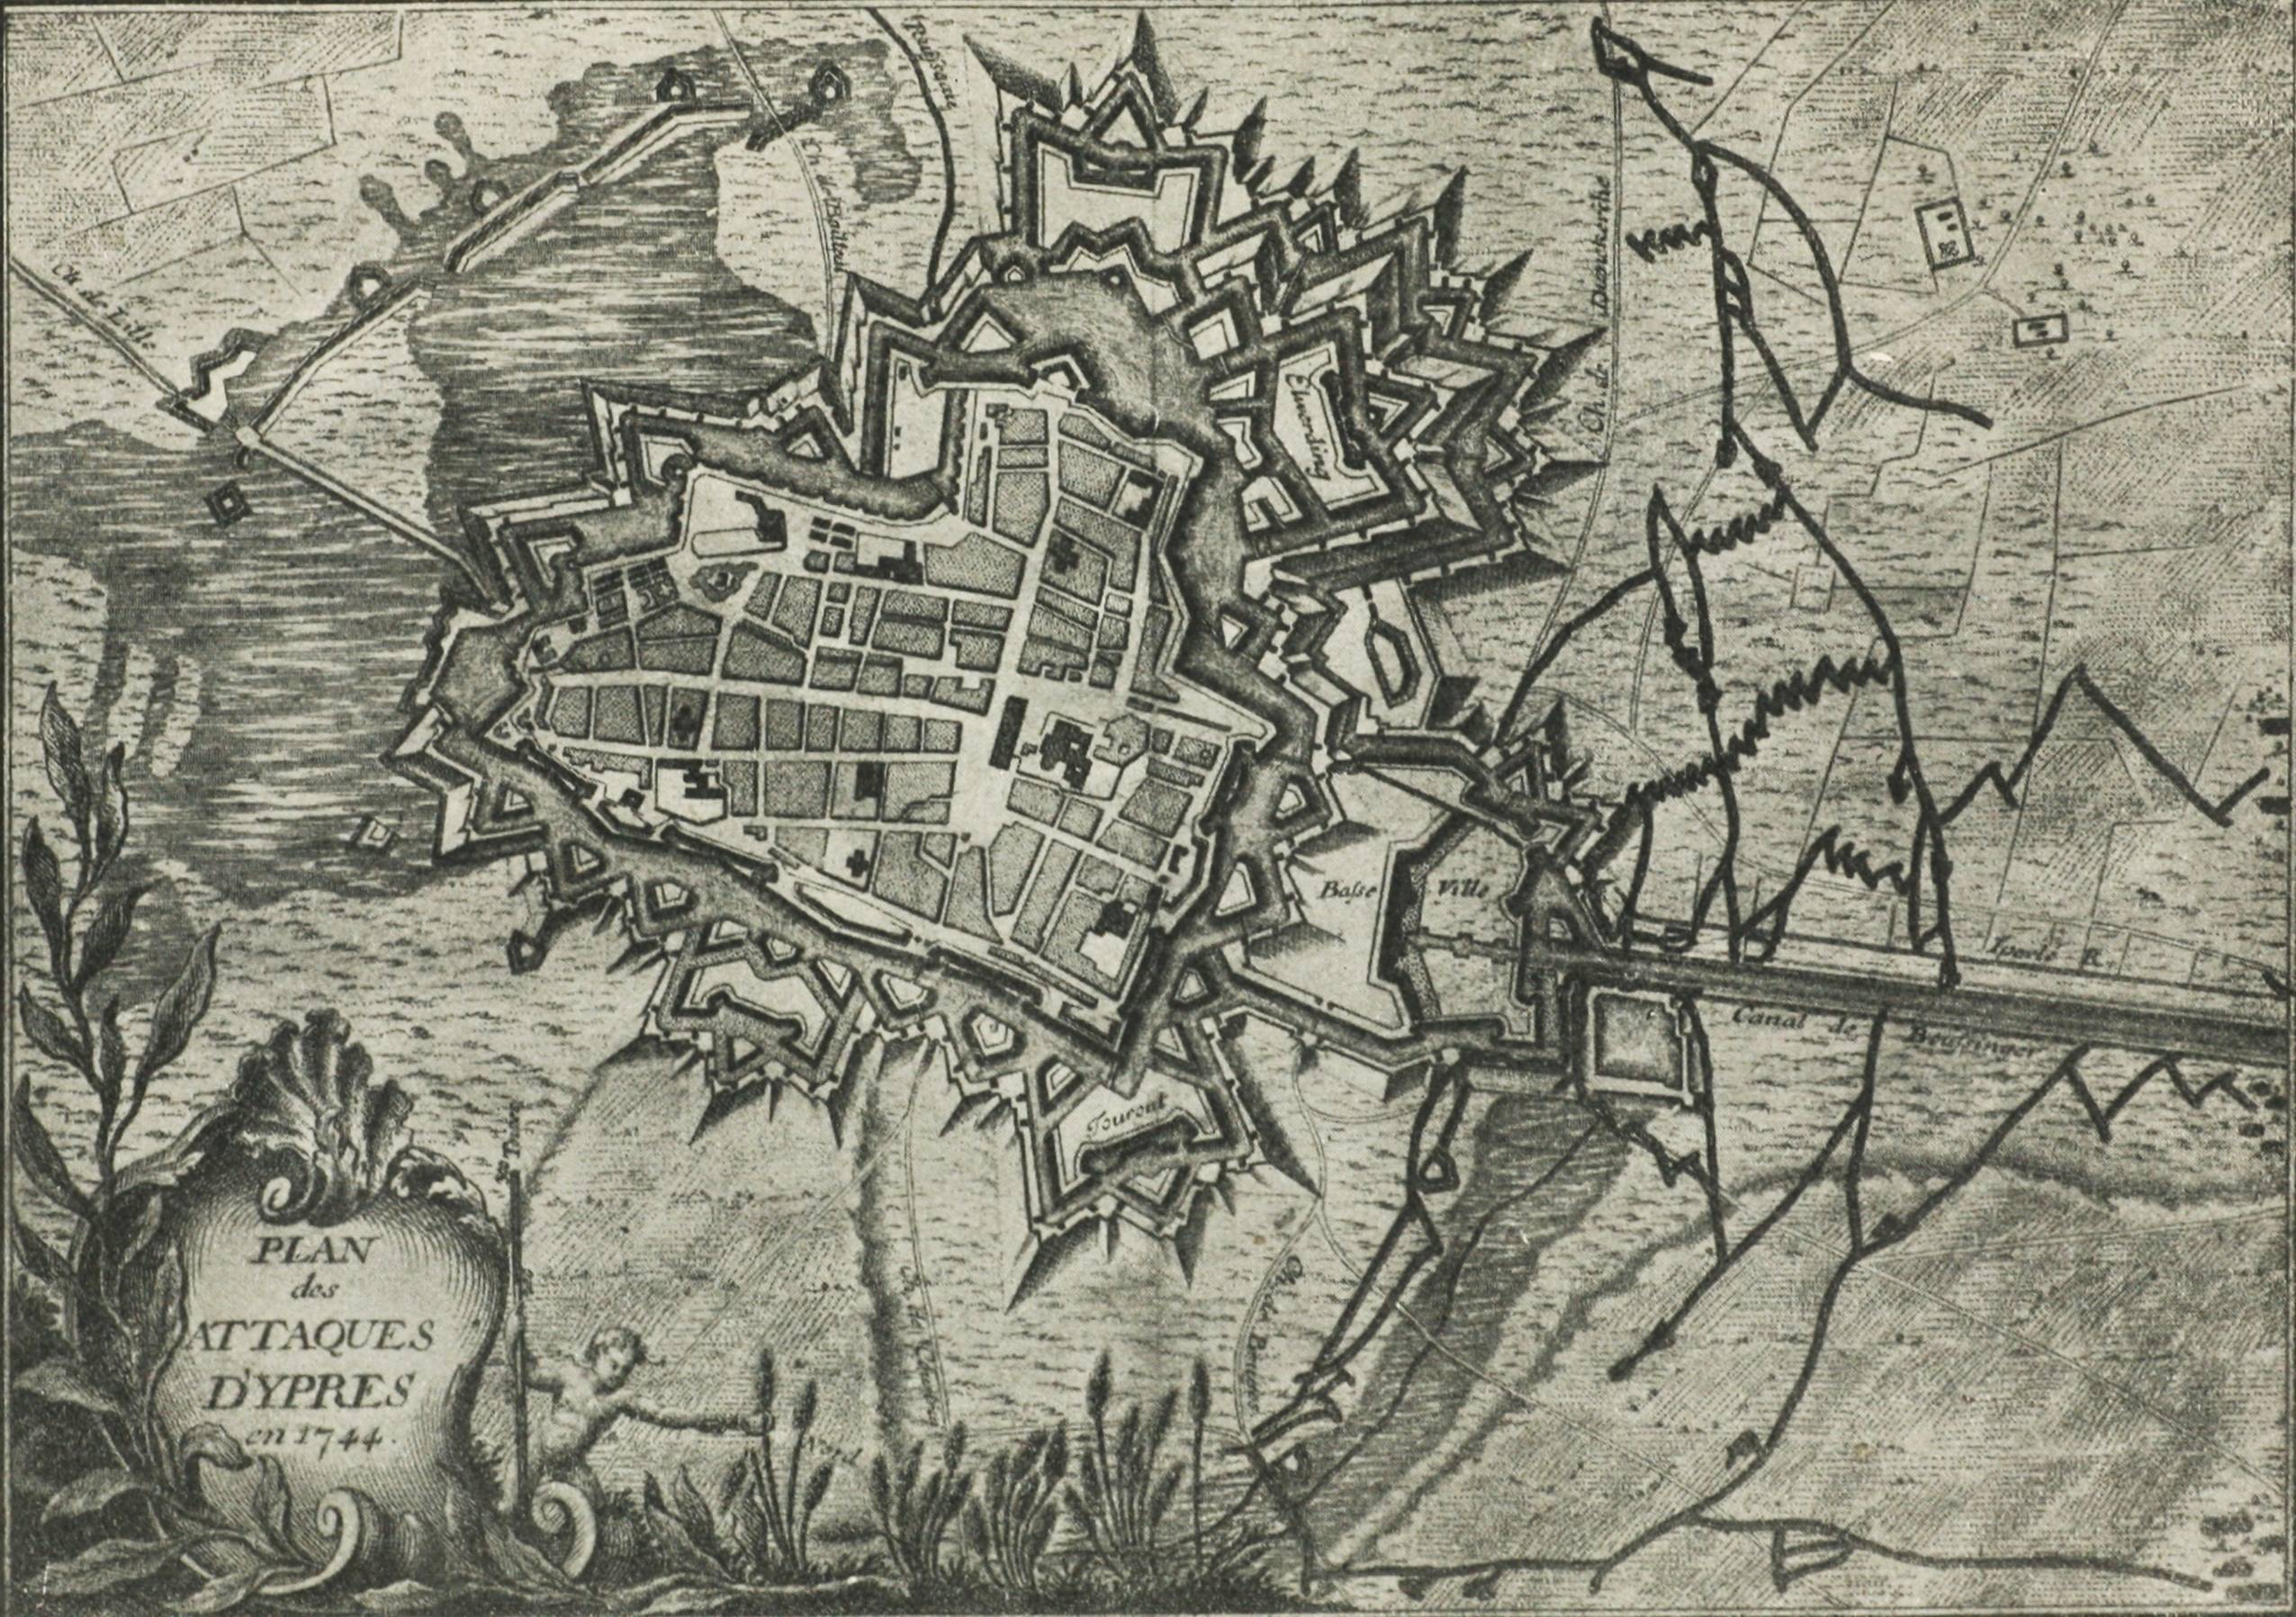 Планъ осады Иперна въ 1744 году. (Изъ старин. изданія Illenset Funck.)